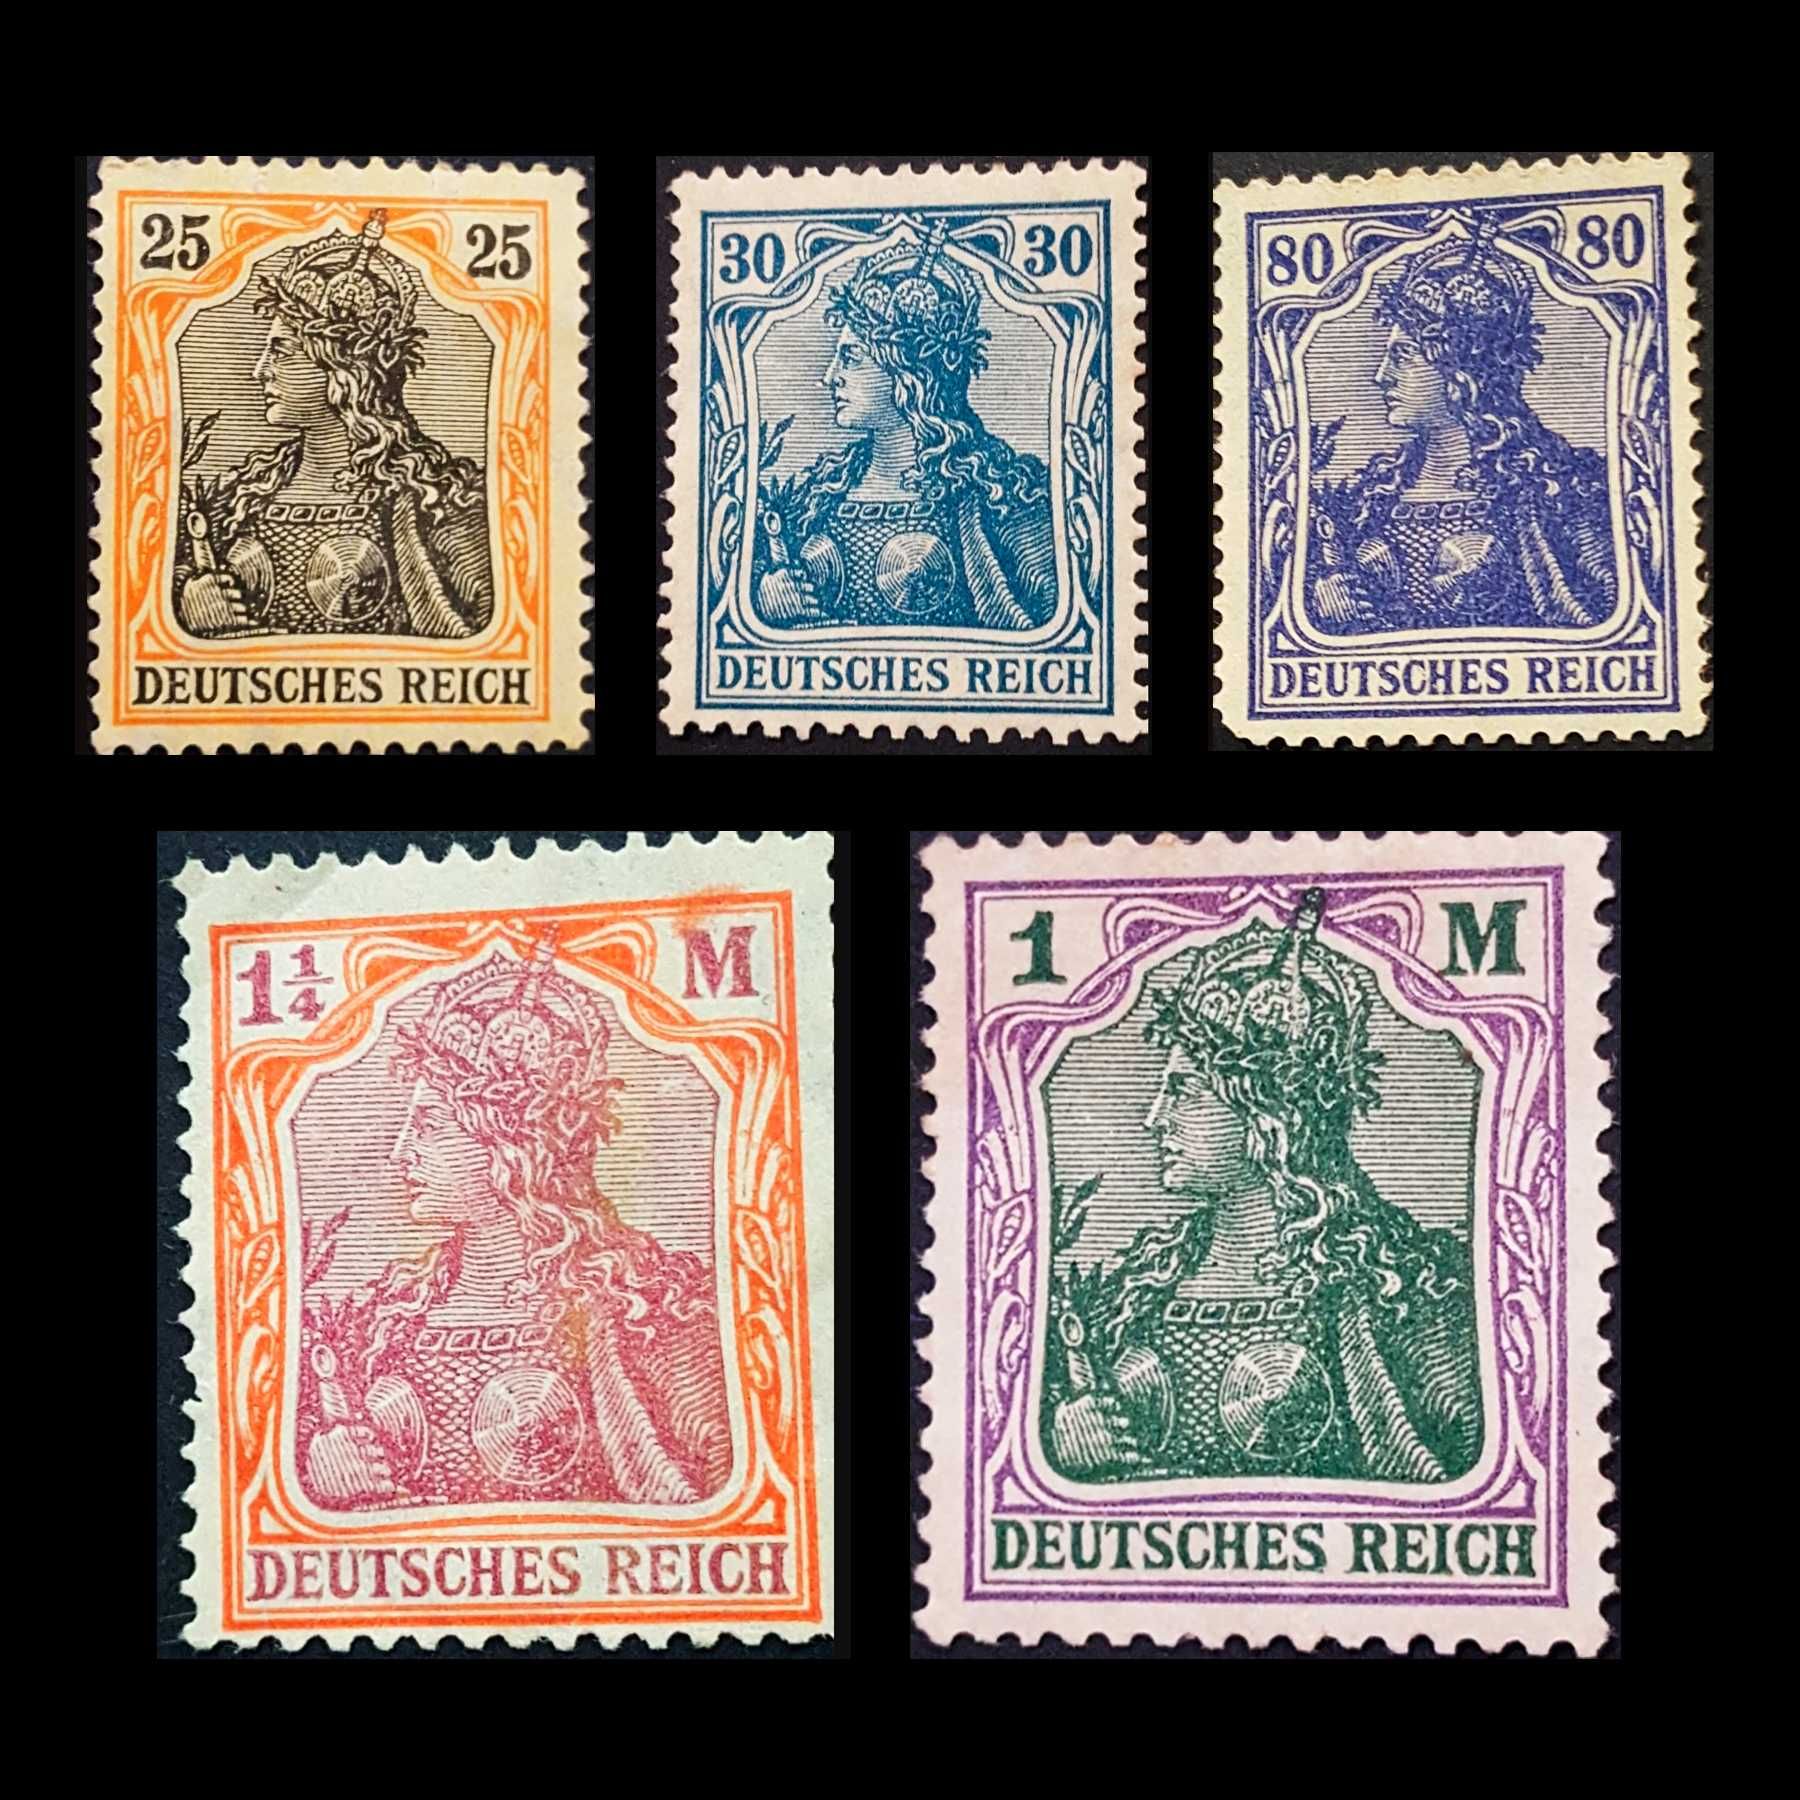 Coleção de selos raros - valor negociavél